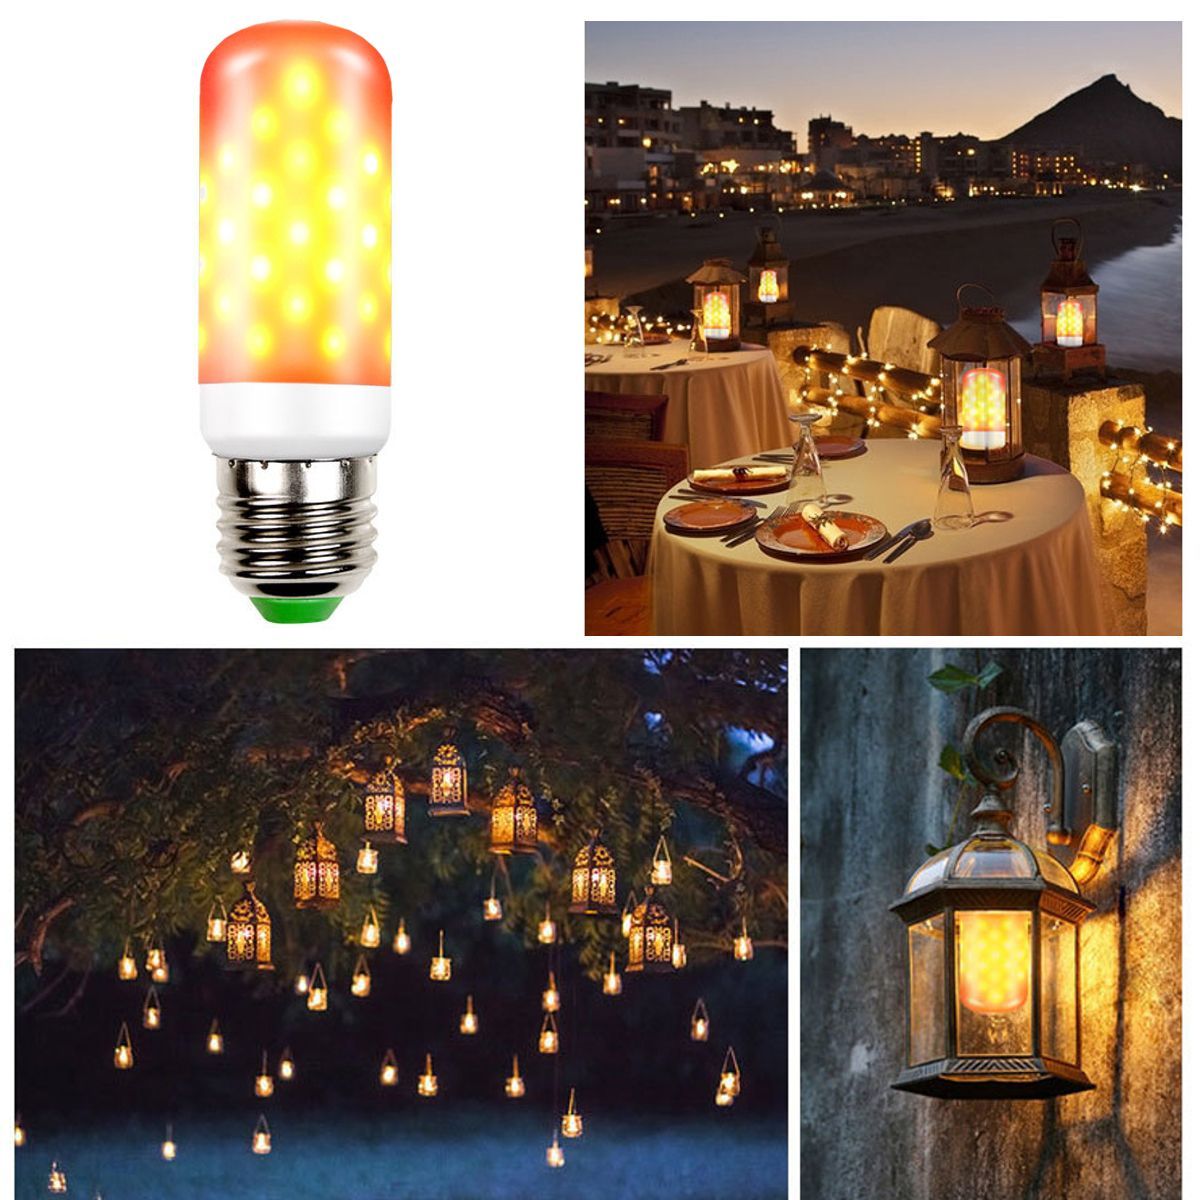 LED-Flicker-Flame-Light-Bulb-Simulated-Nature-Fire-Effect-Lamp-E26E27-1724498